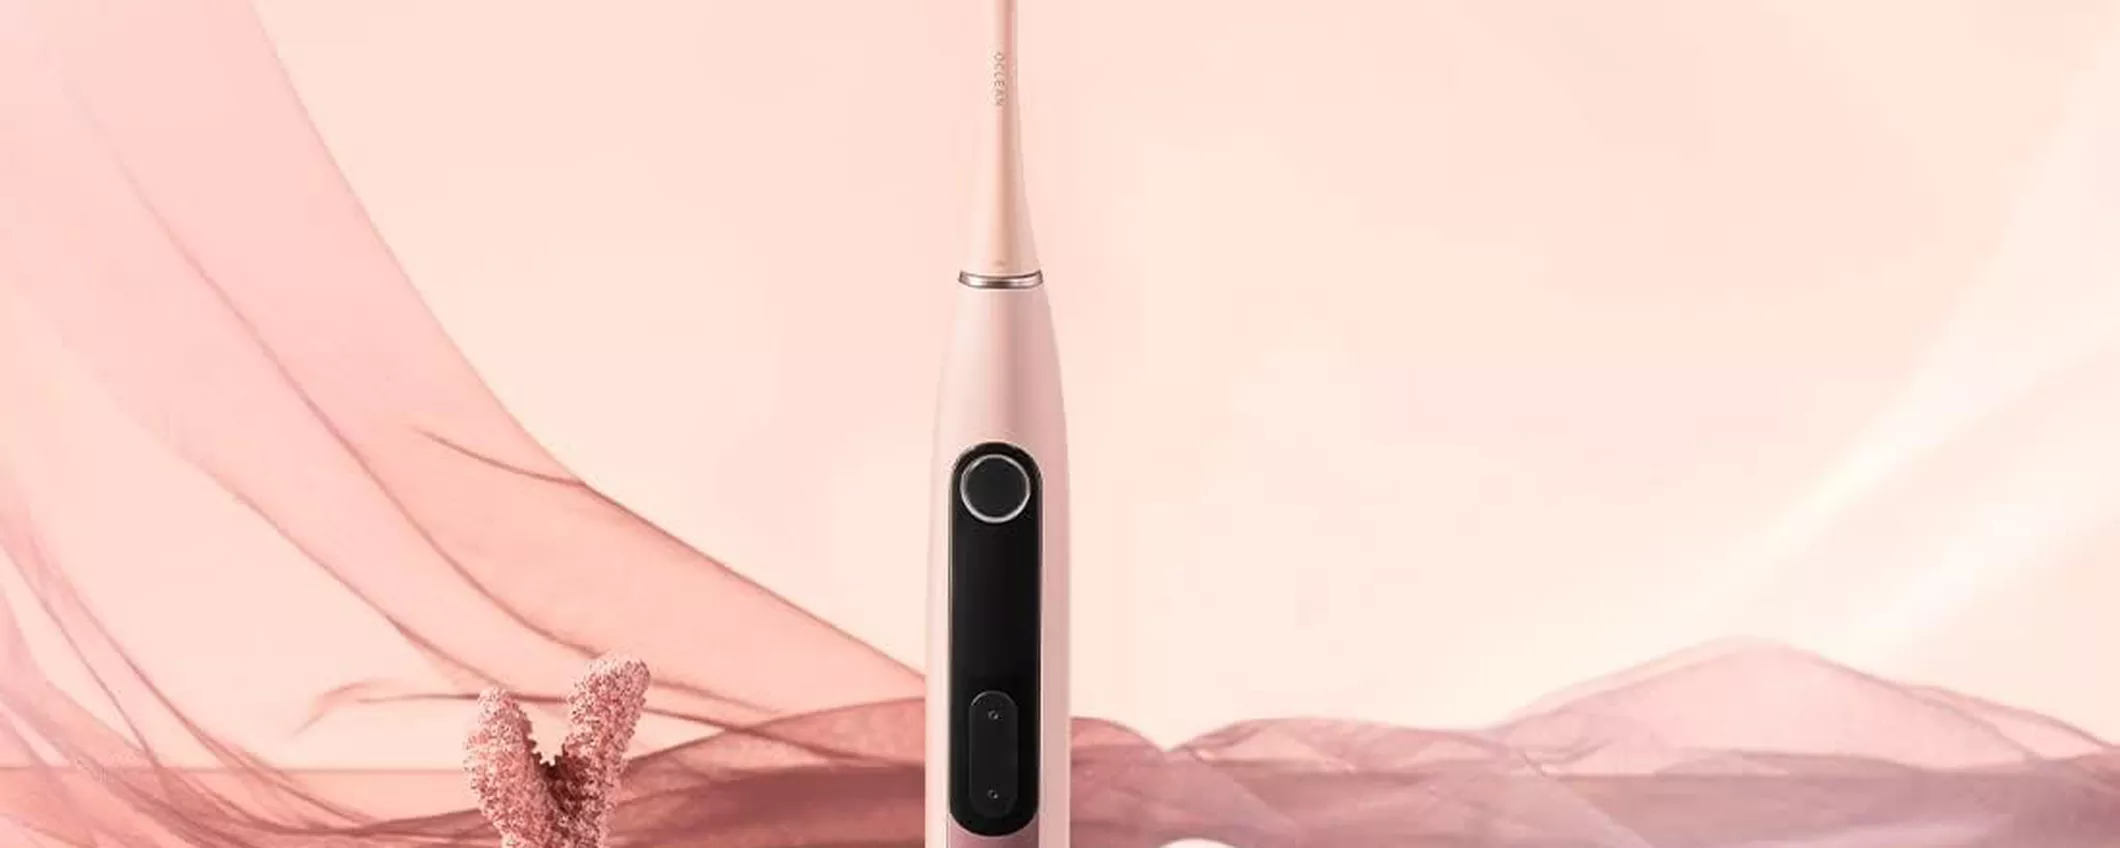 Oclean X10, spazzolino elettrico sonico intelligente a pochissimo su Amazon (-50%)